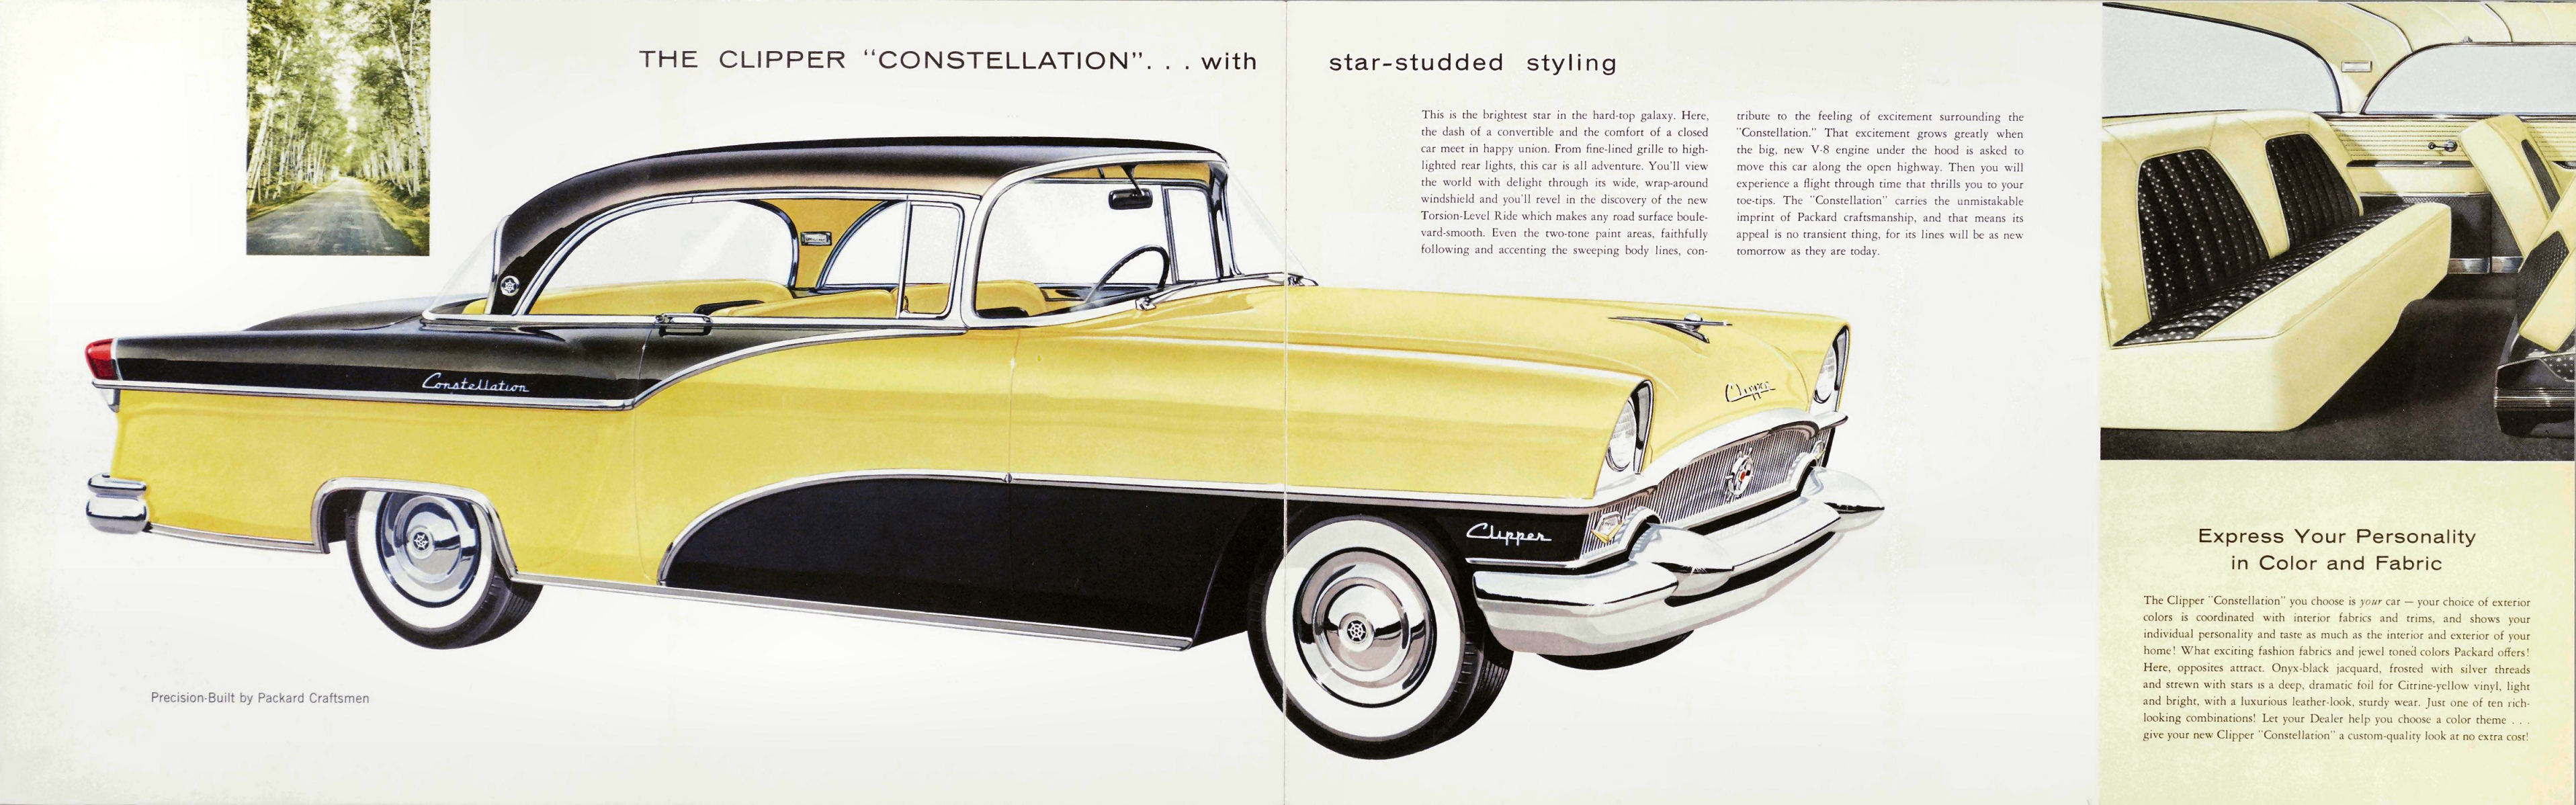 1955_Packard_Clipper_Prestige-04-05